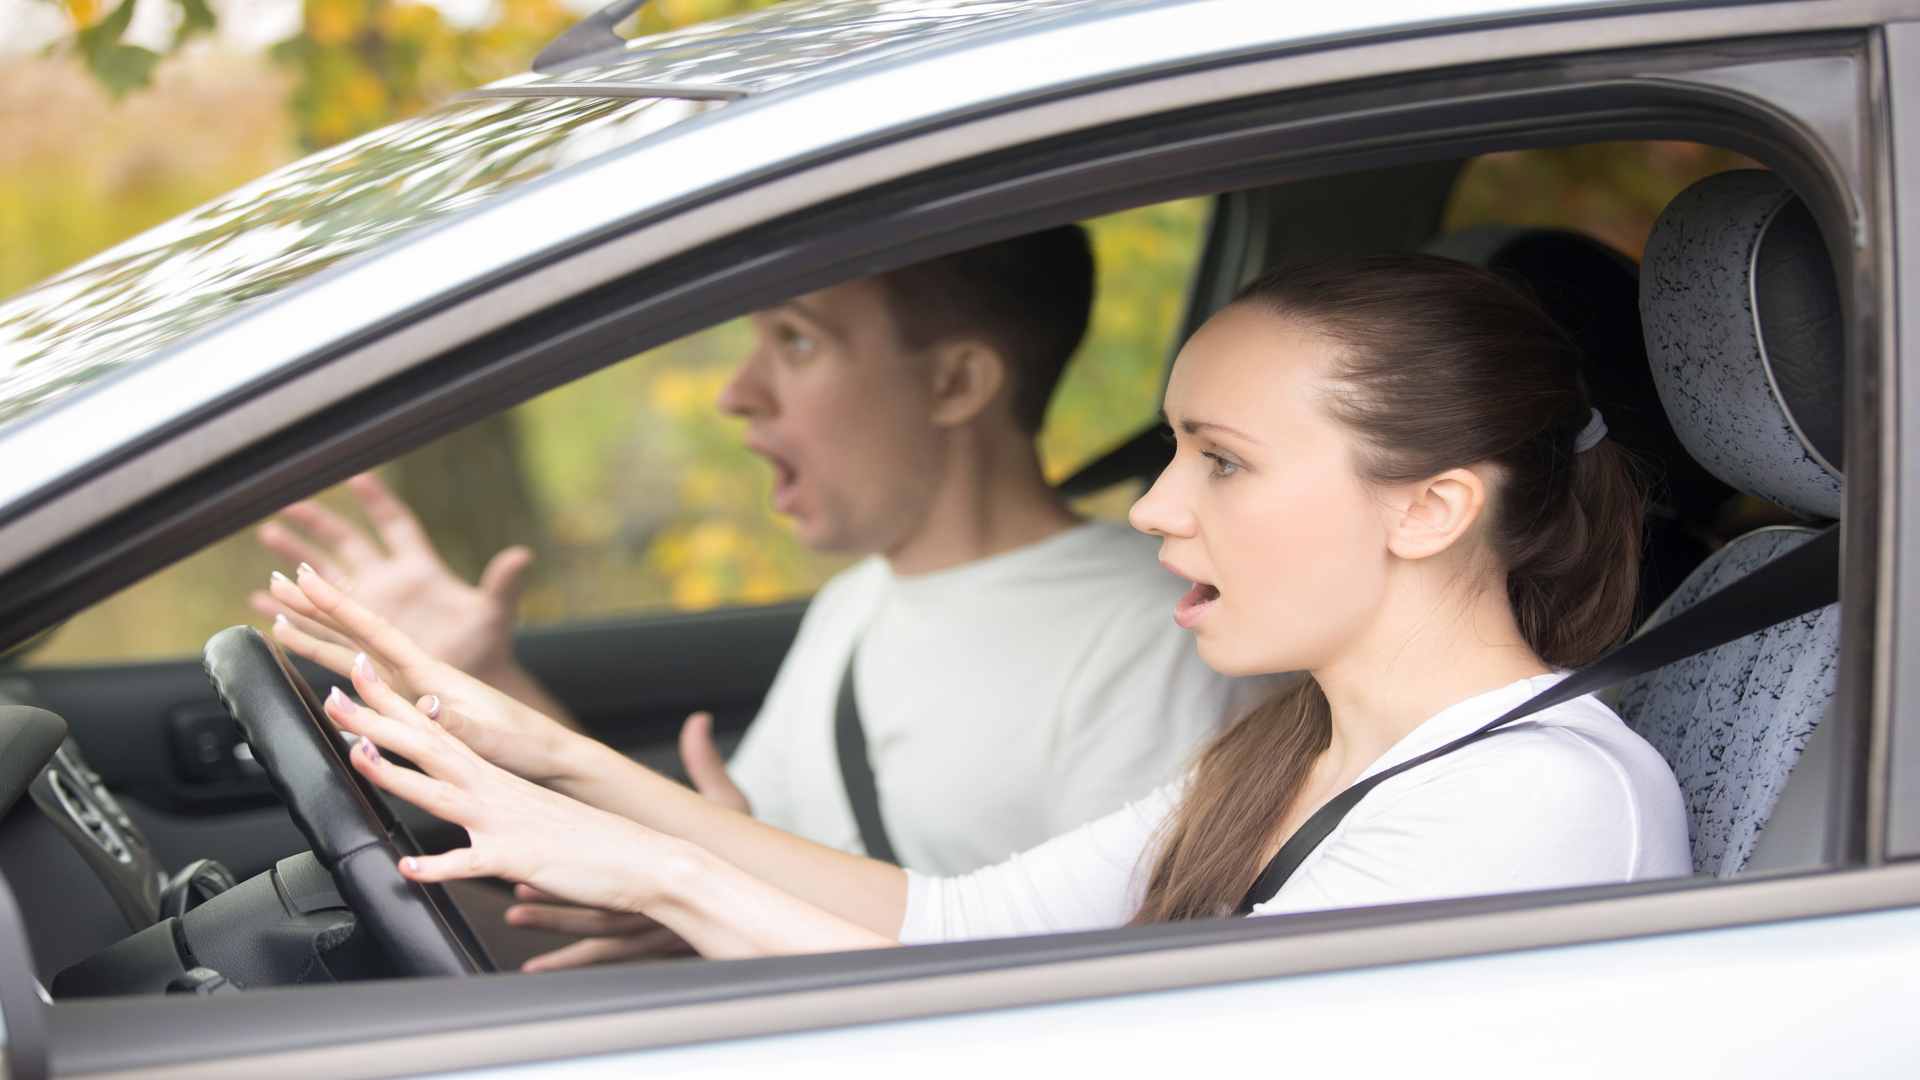 פסילת רישיון נהיגה בעקבות תאונה